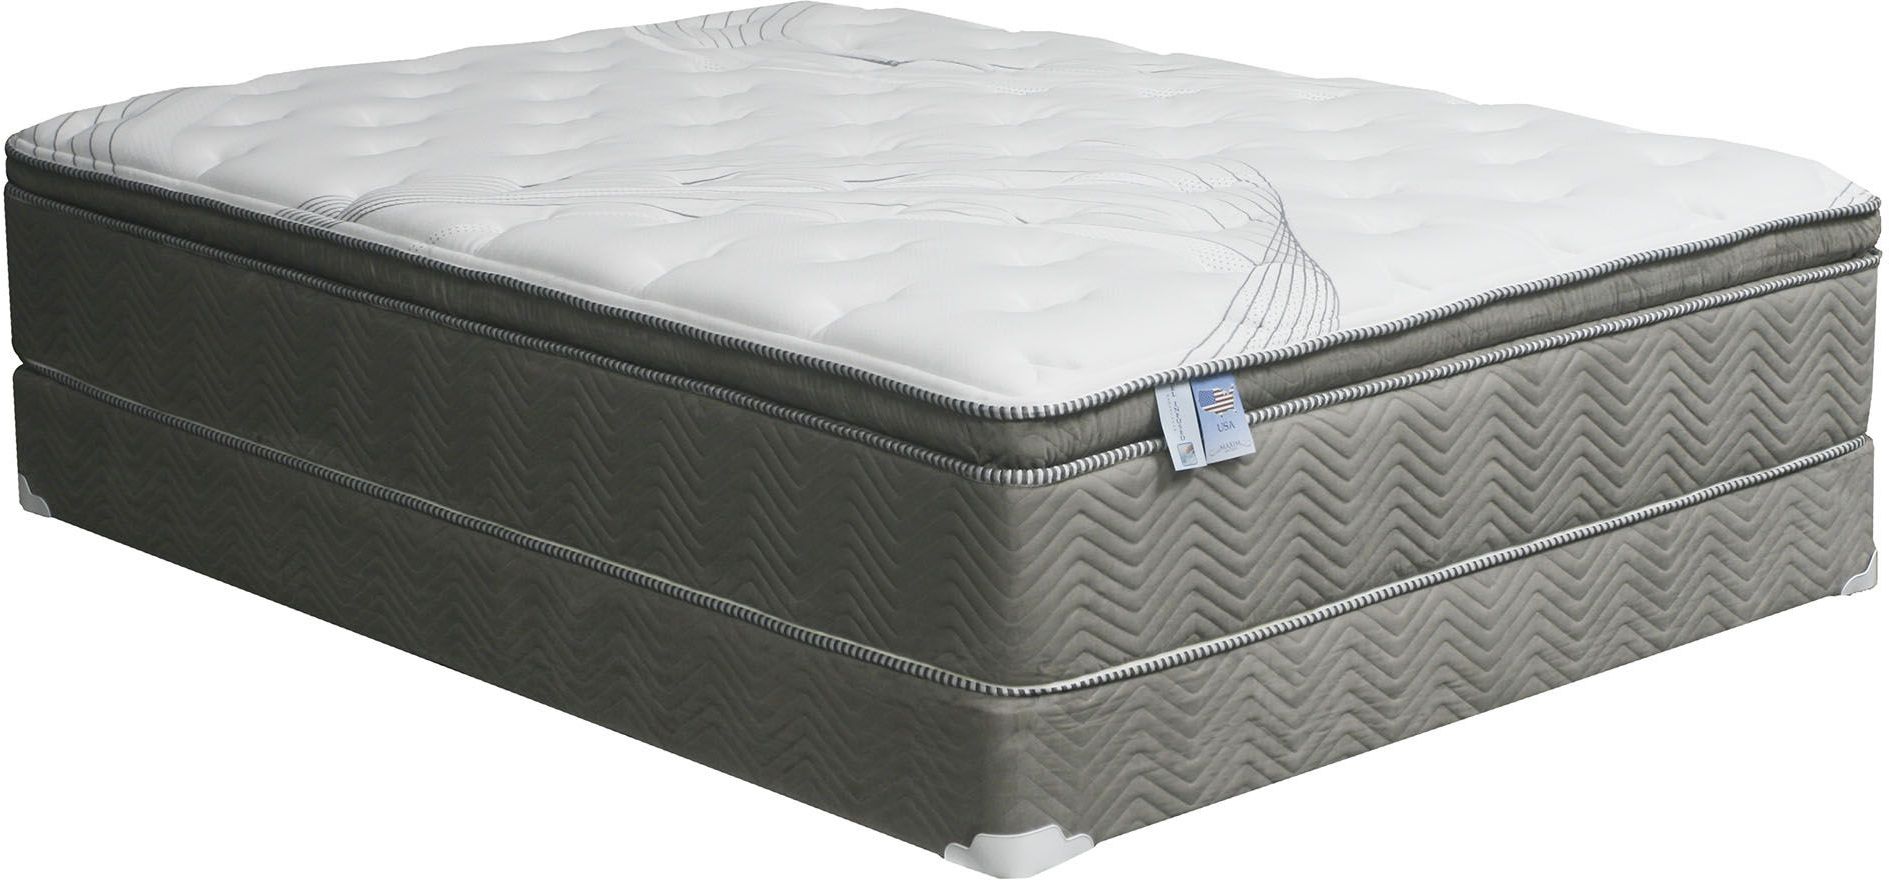 kensington pillow top queen mattress